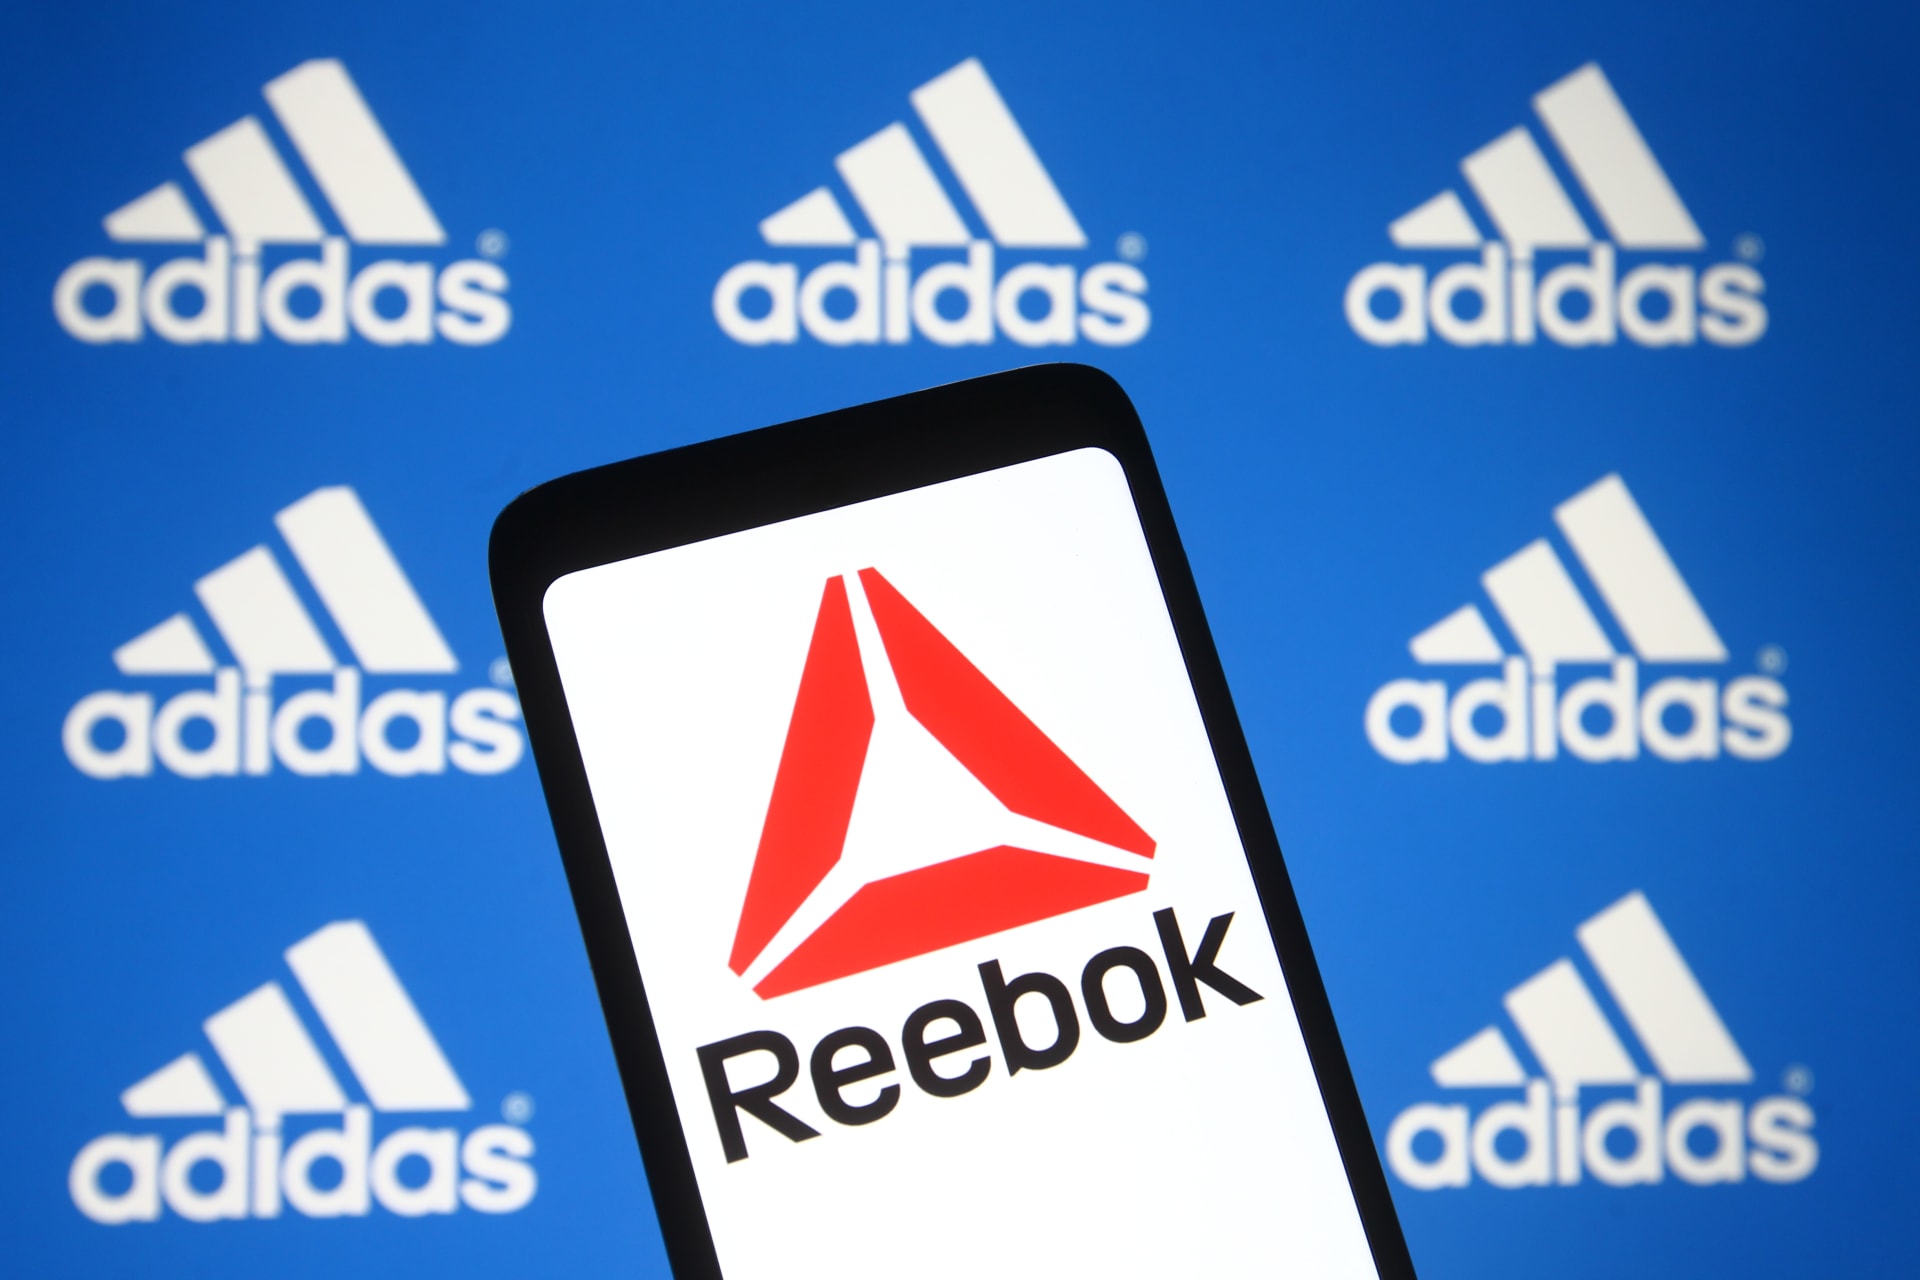 Značka Reebok doposud patřila pod Adidas.